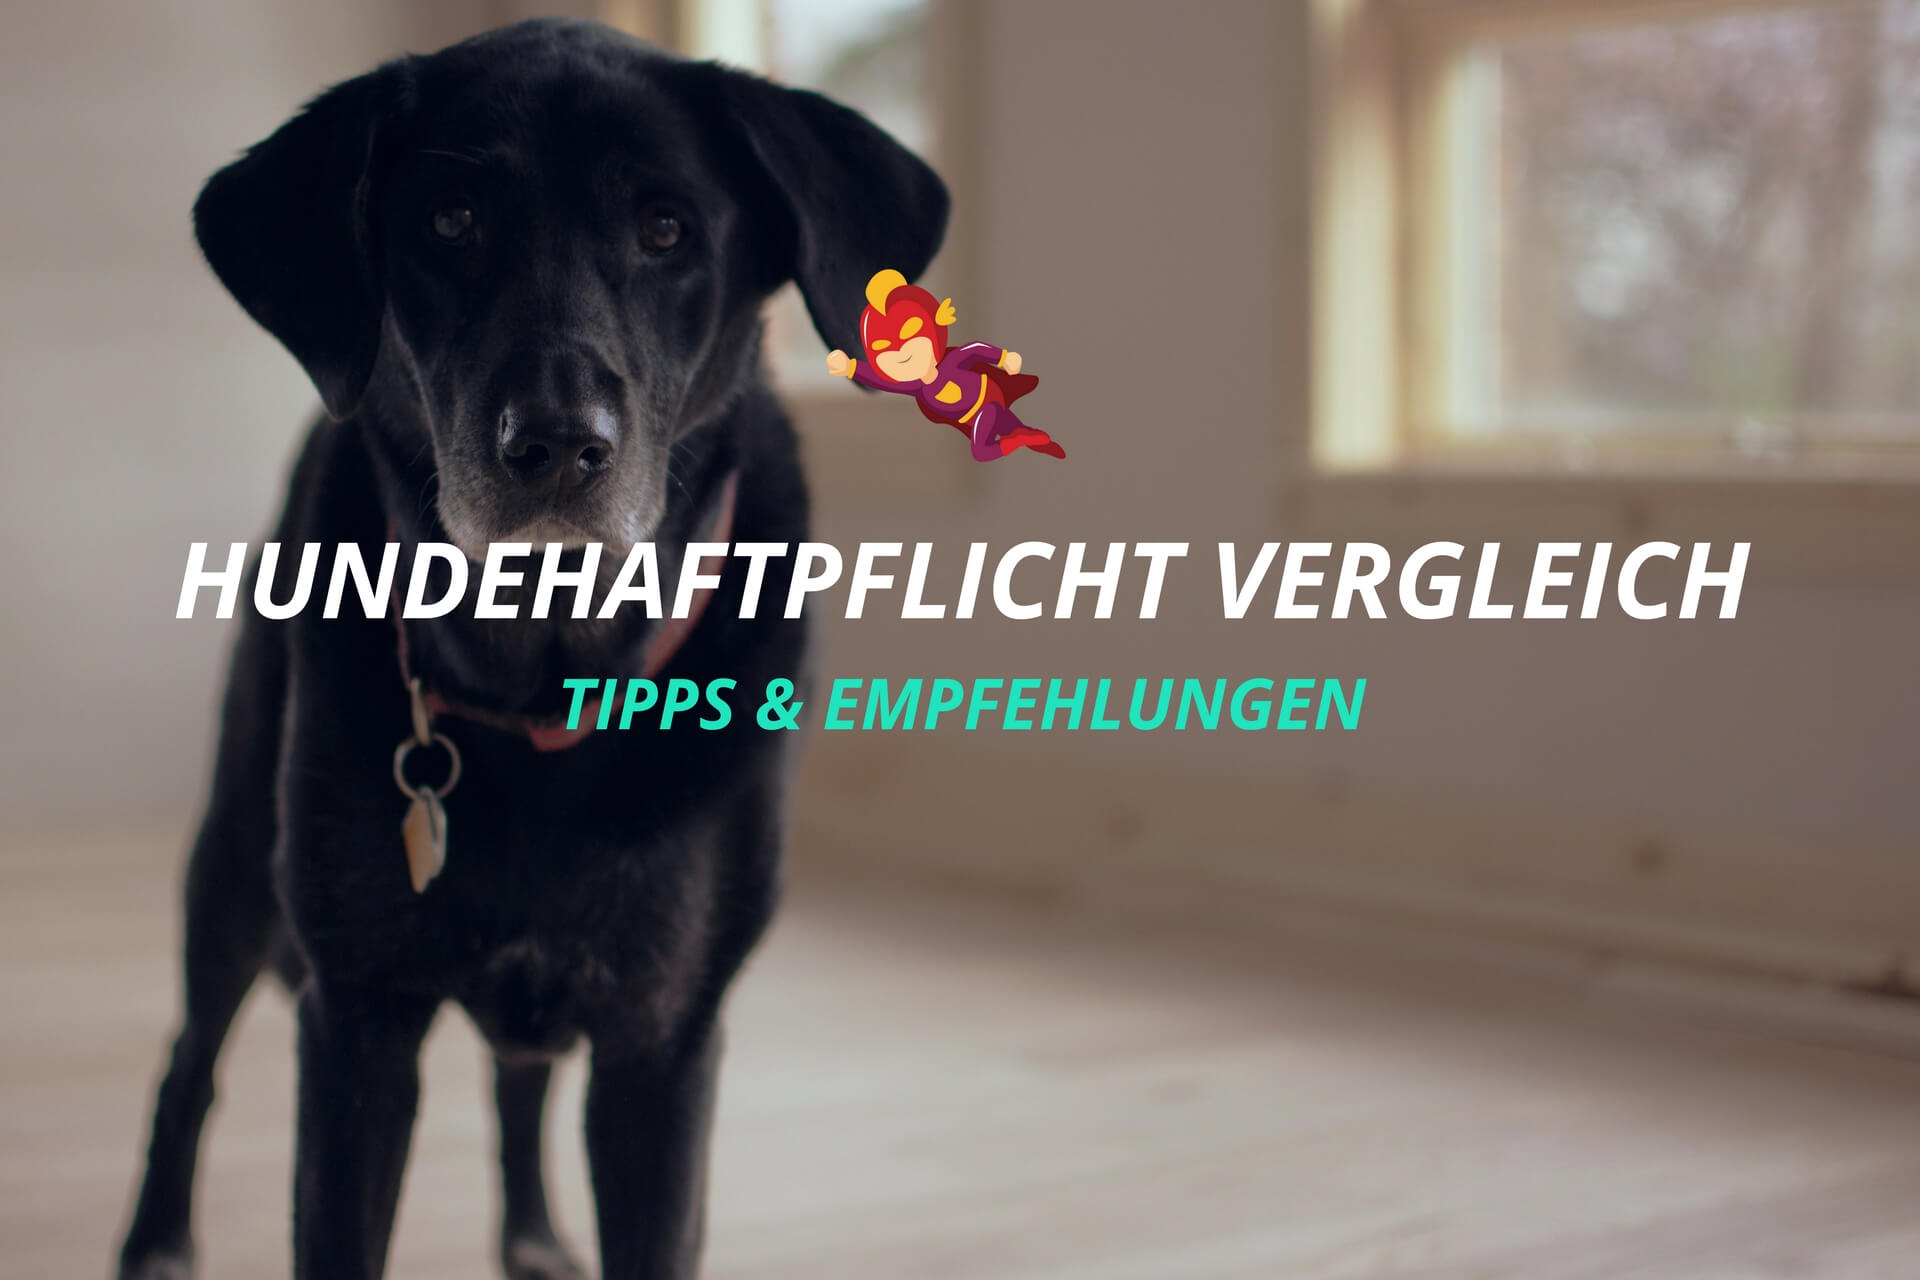 Hundehaftpflichtversicherung Vergleich - Finanzhelden.org